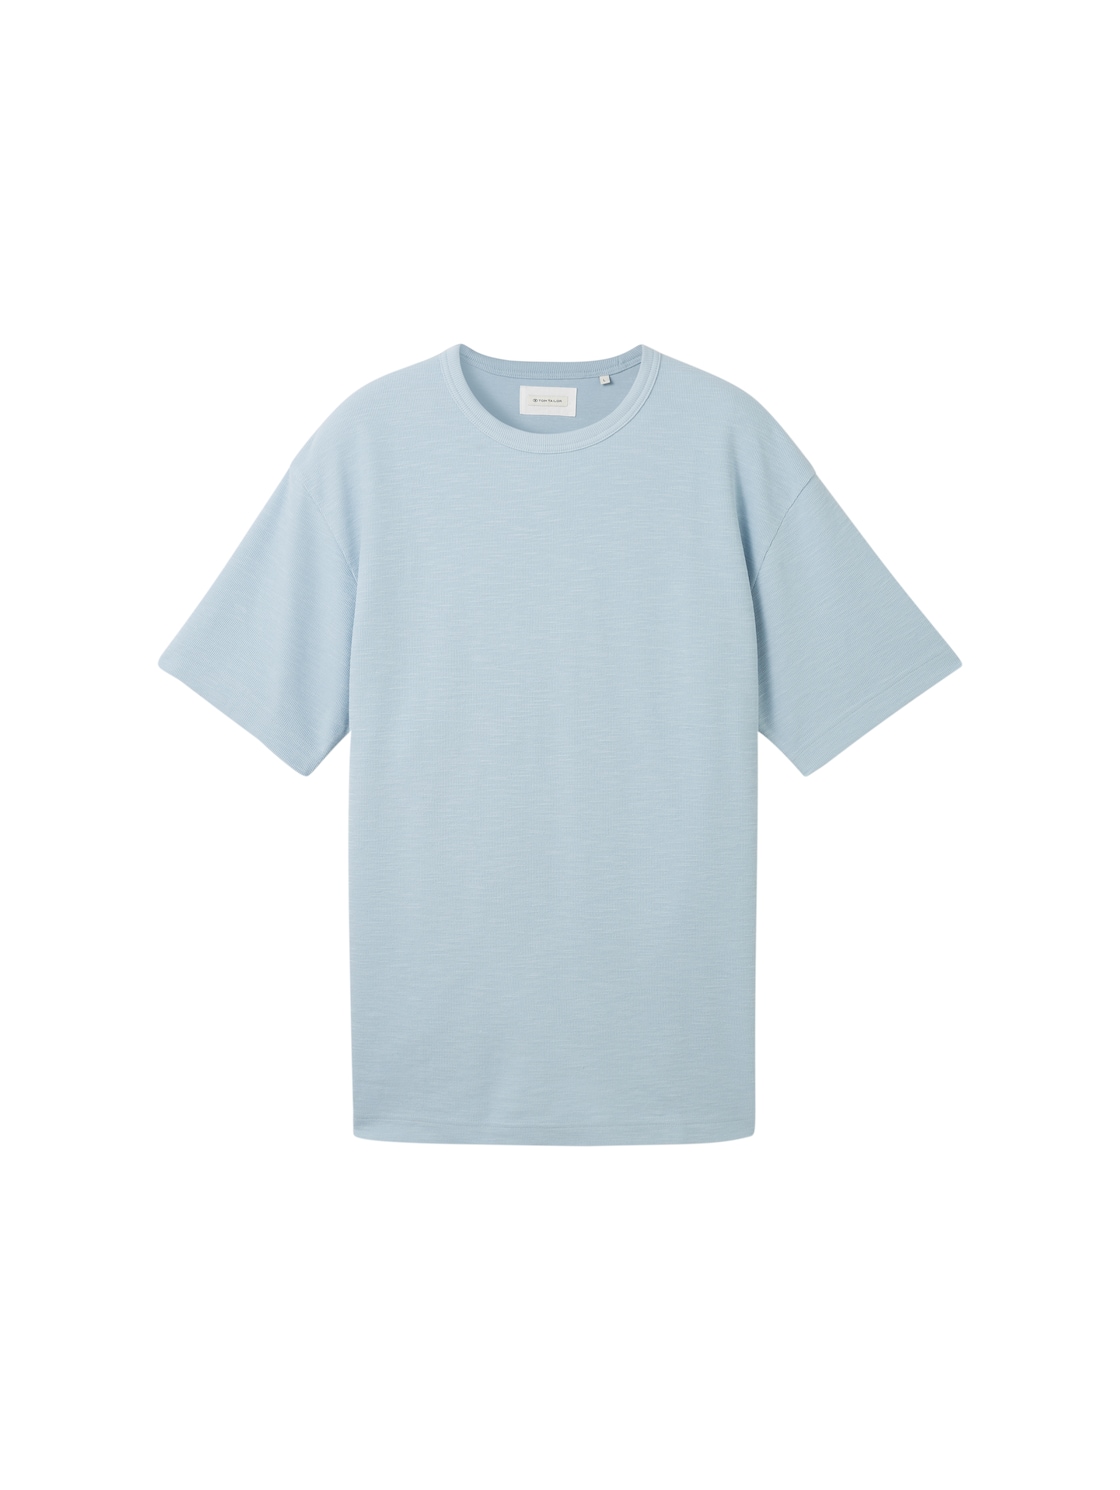 TOM TAILOR Herren T-Shirt mit Struktur, blau, Uni, Gr. S von Tom Tailor